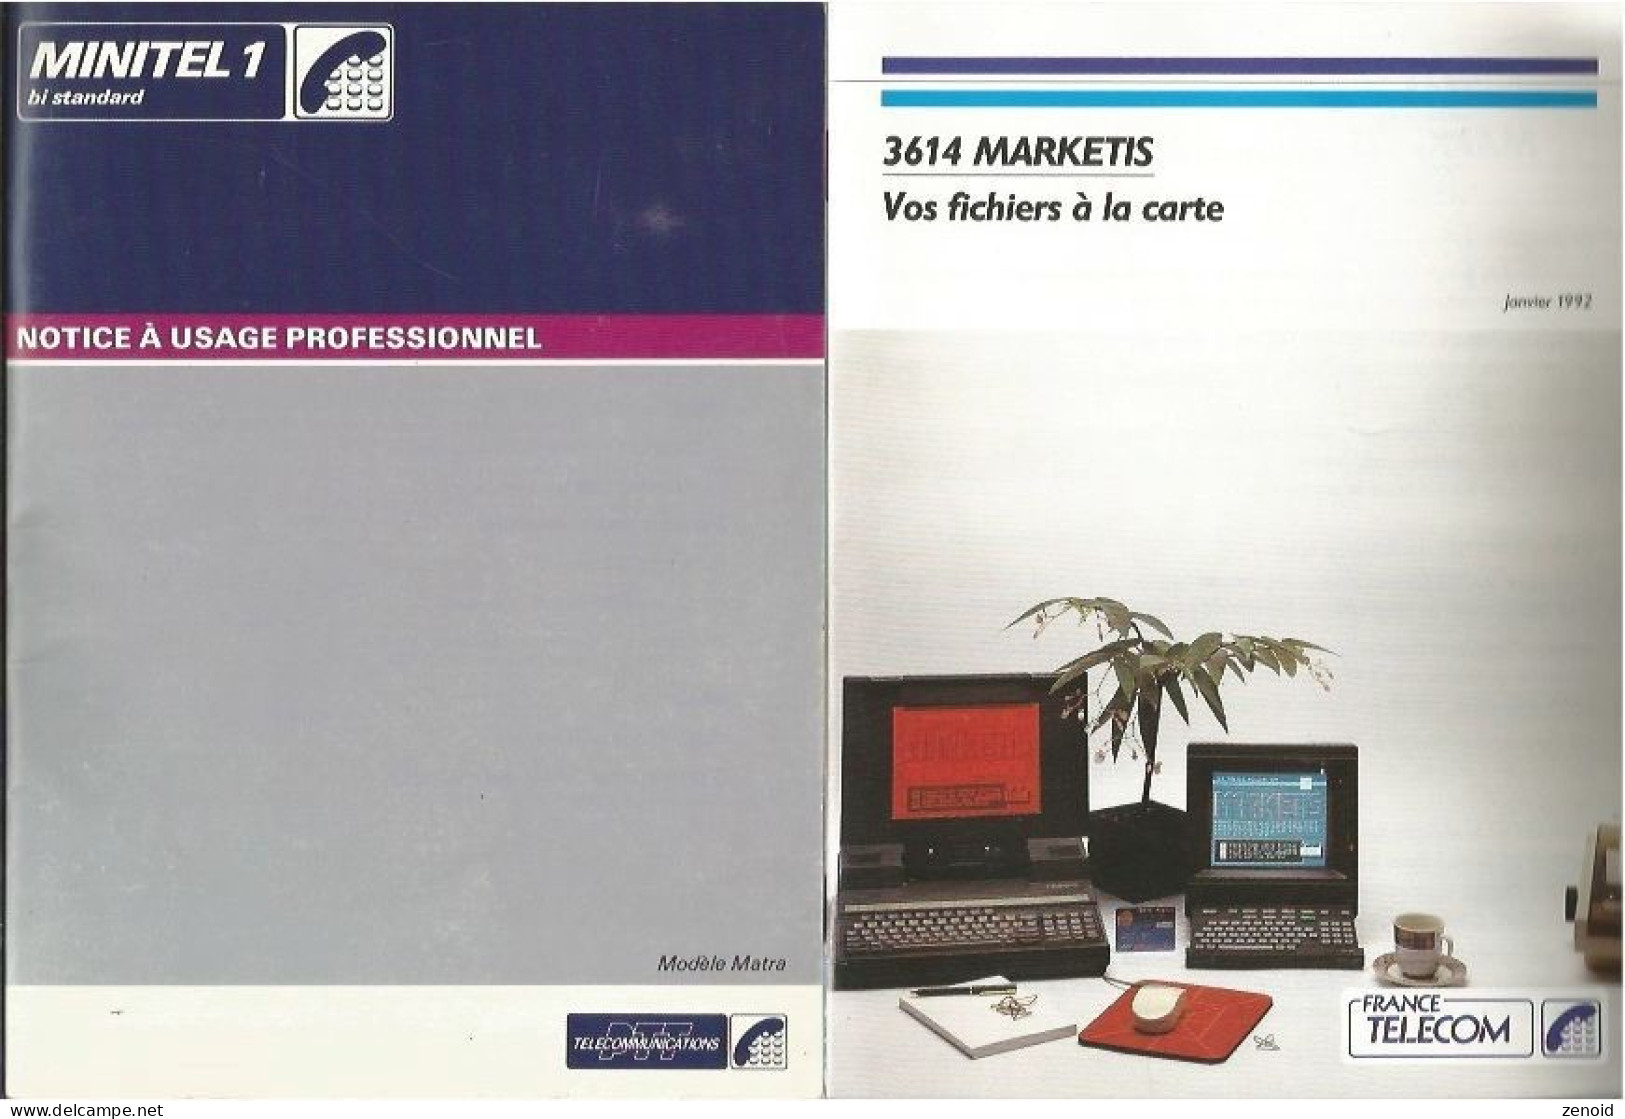 Envoi ,Les Pages Minitel 1995 + Livret "Minitel 1 - Telefoontechniek